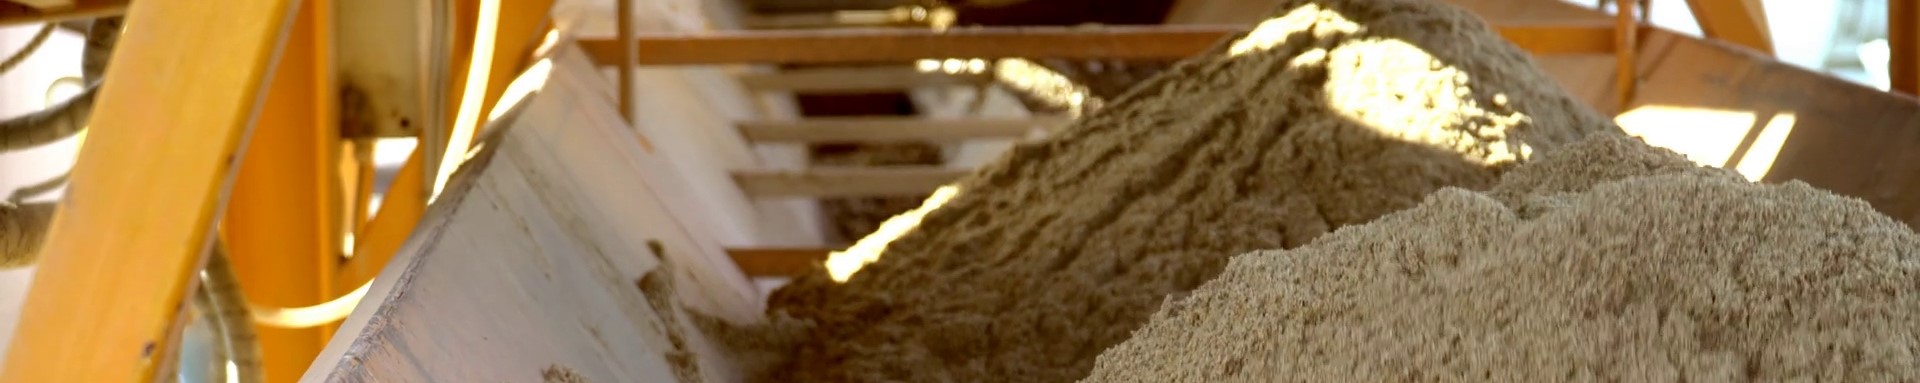 Песок для бетона в Лесколово где купить хороший песок